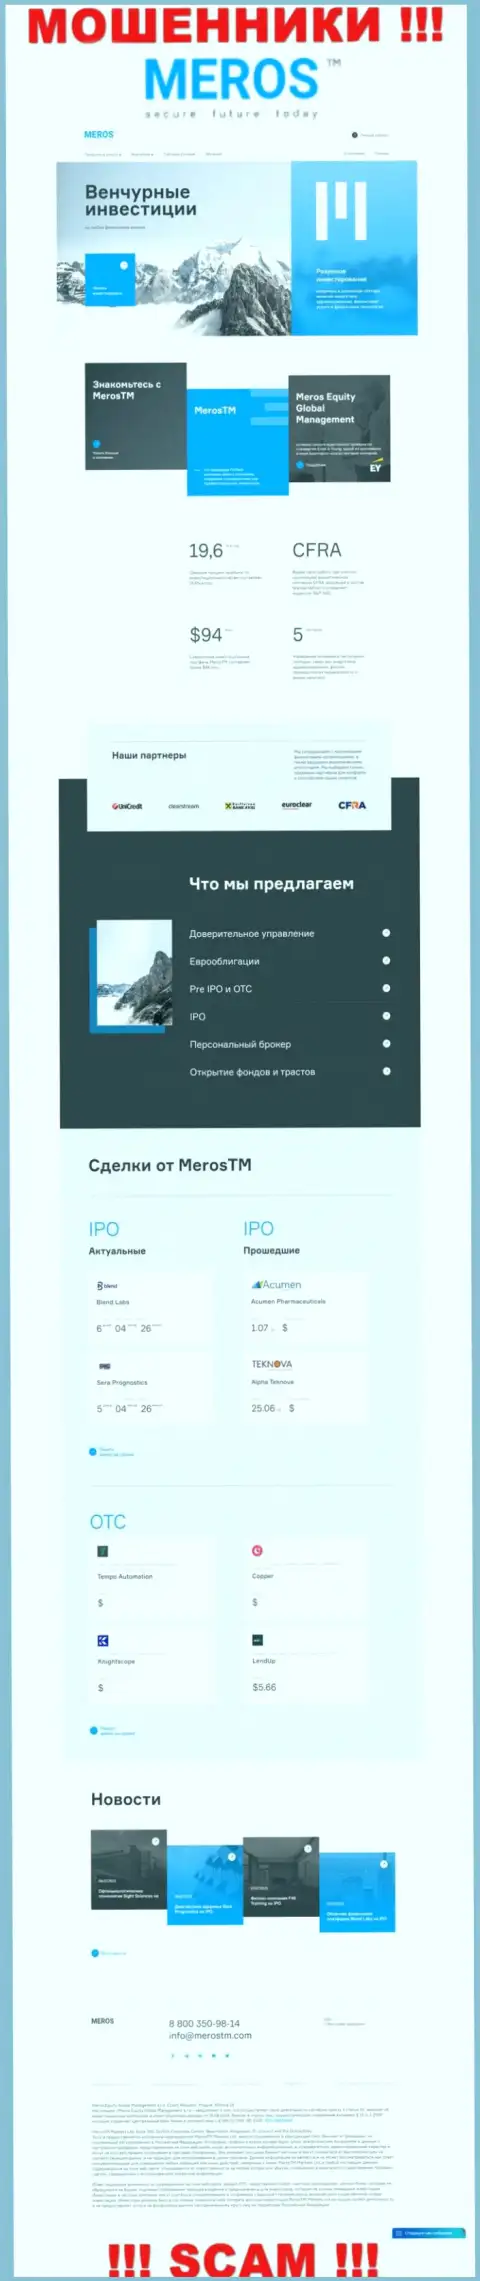 Обзор официального интернет-портала мошенников Meros TM